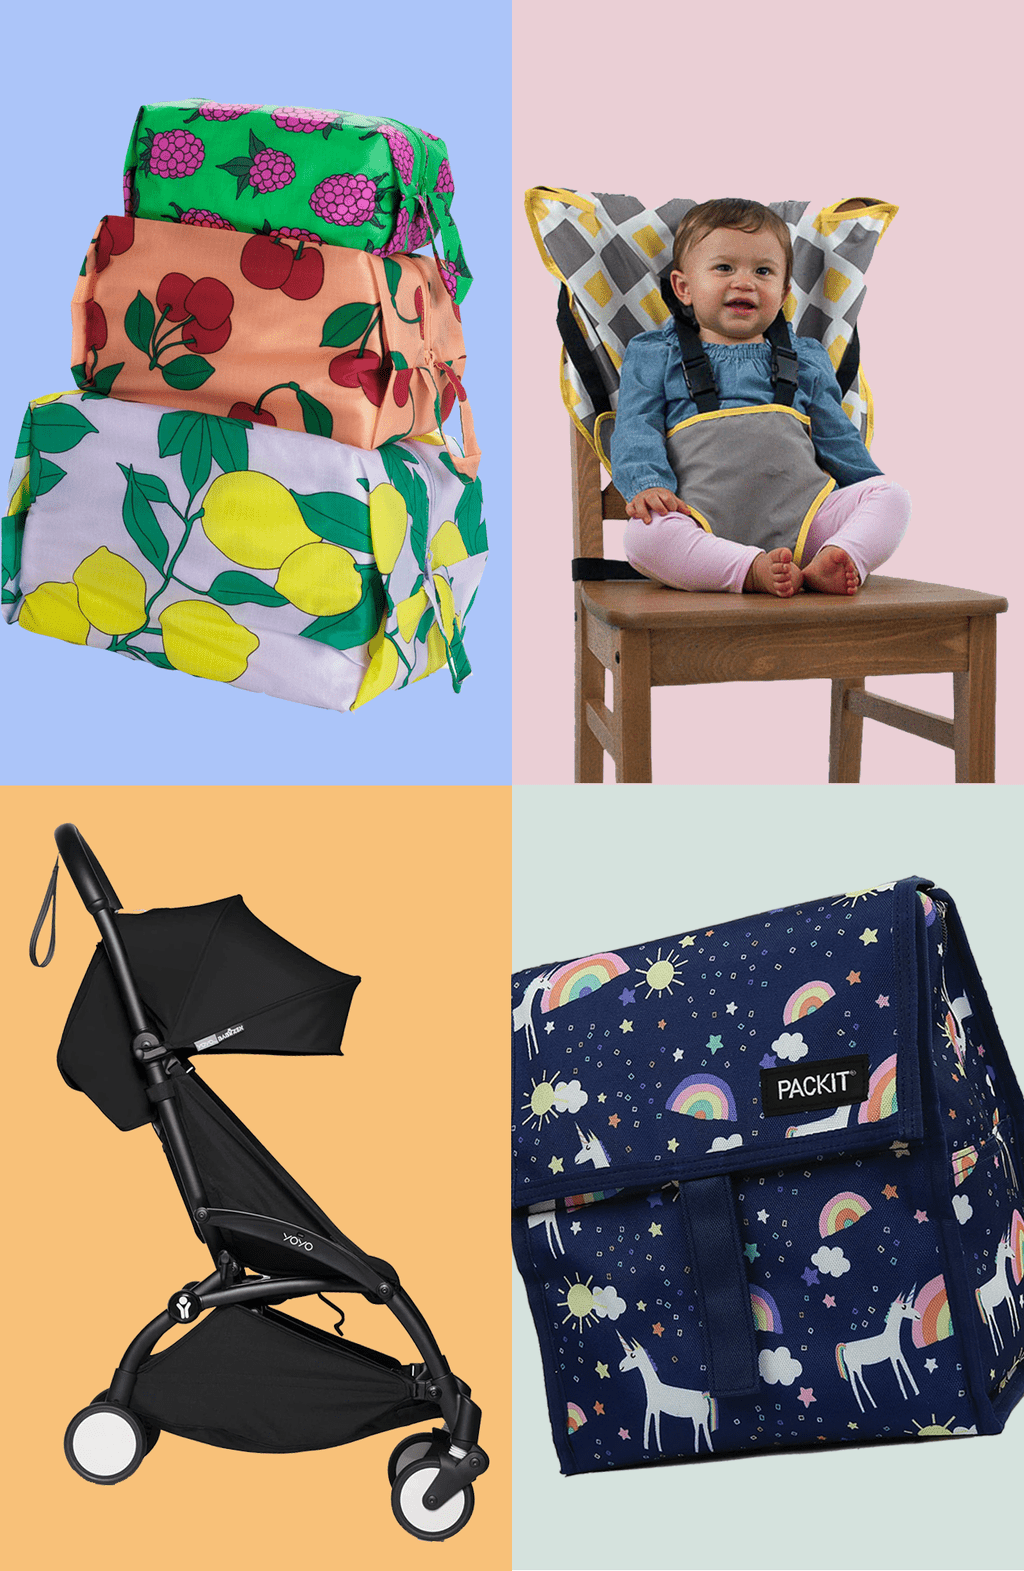 Essential baby travel gear